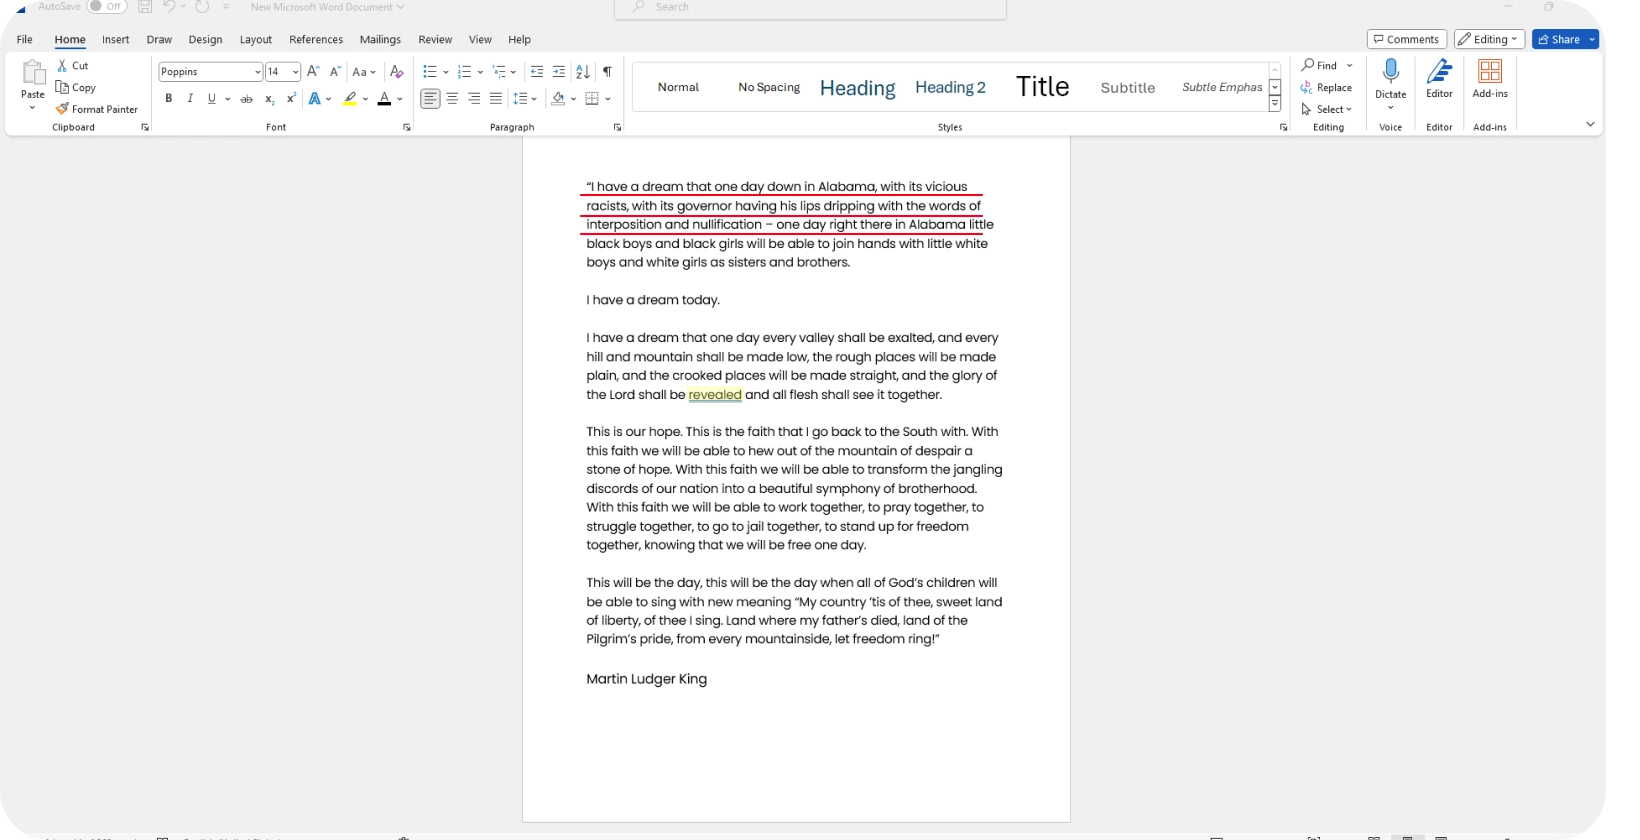 Microsoft Word dokuments, kurā parādīta runas transkripcija, uzsverot diktēšanas funkcijas efektivitāti.